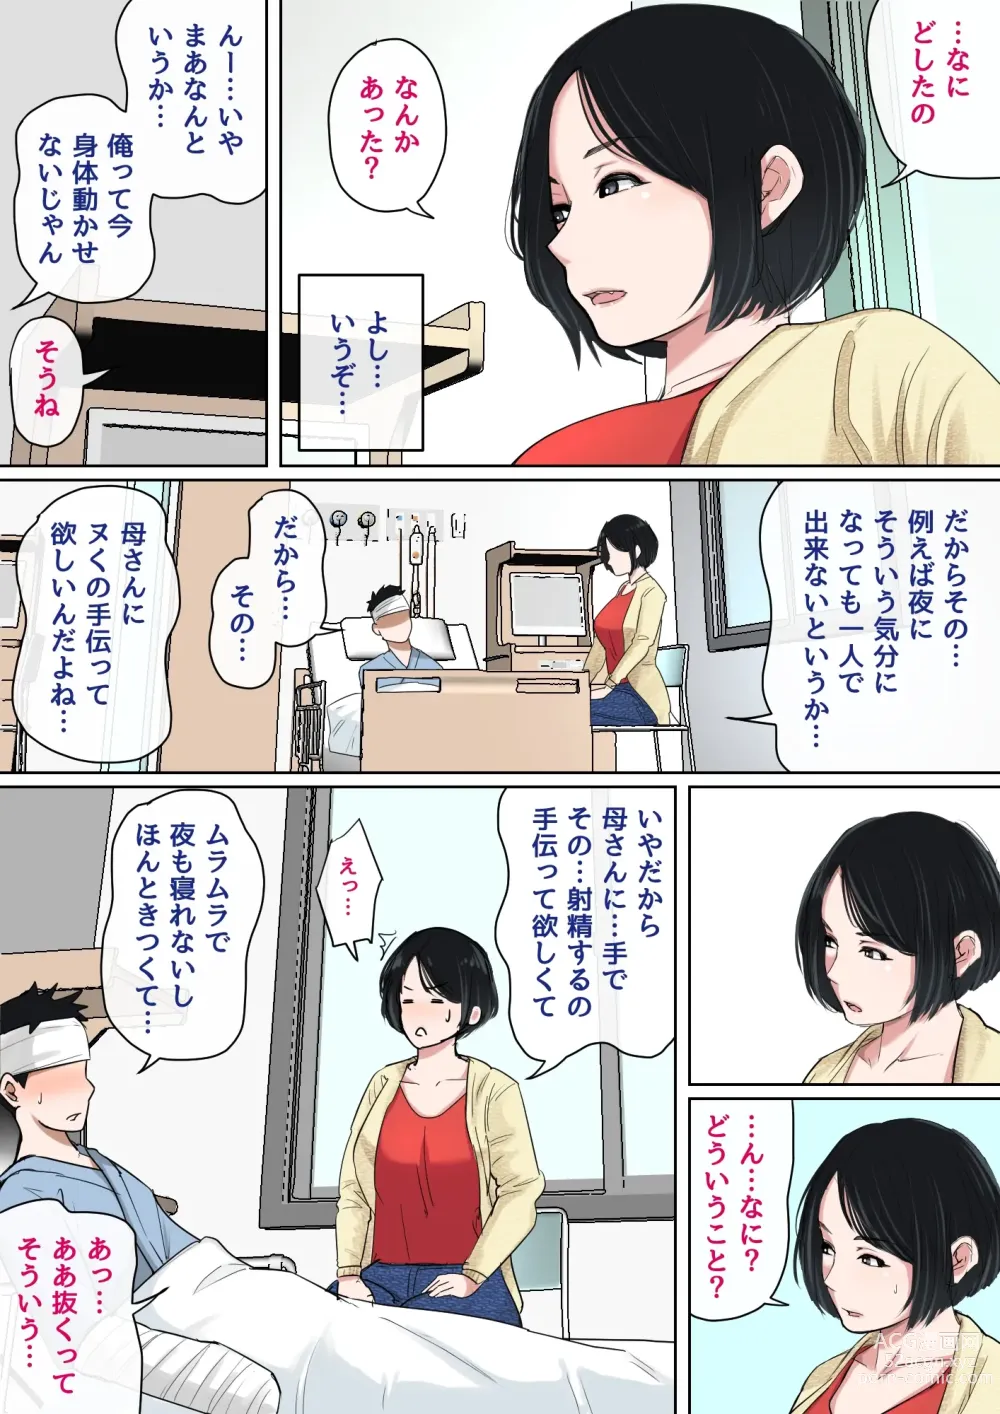 Page 3 of doujinshi Nyuuin-chuu no Muramura wa...